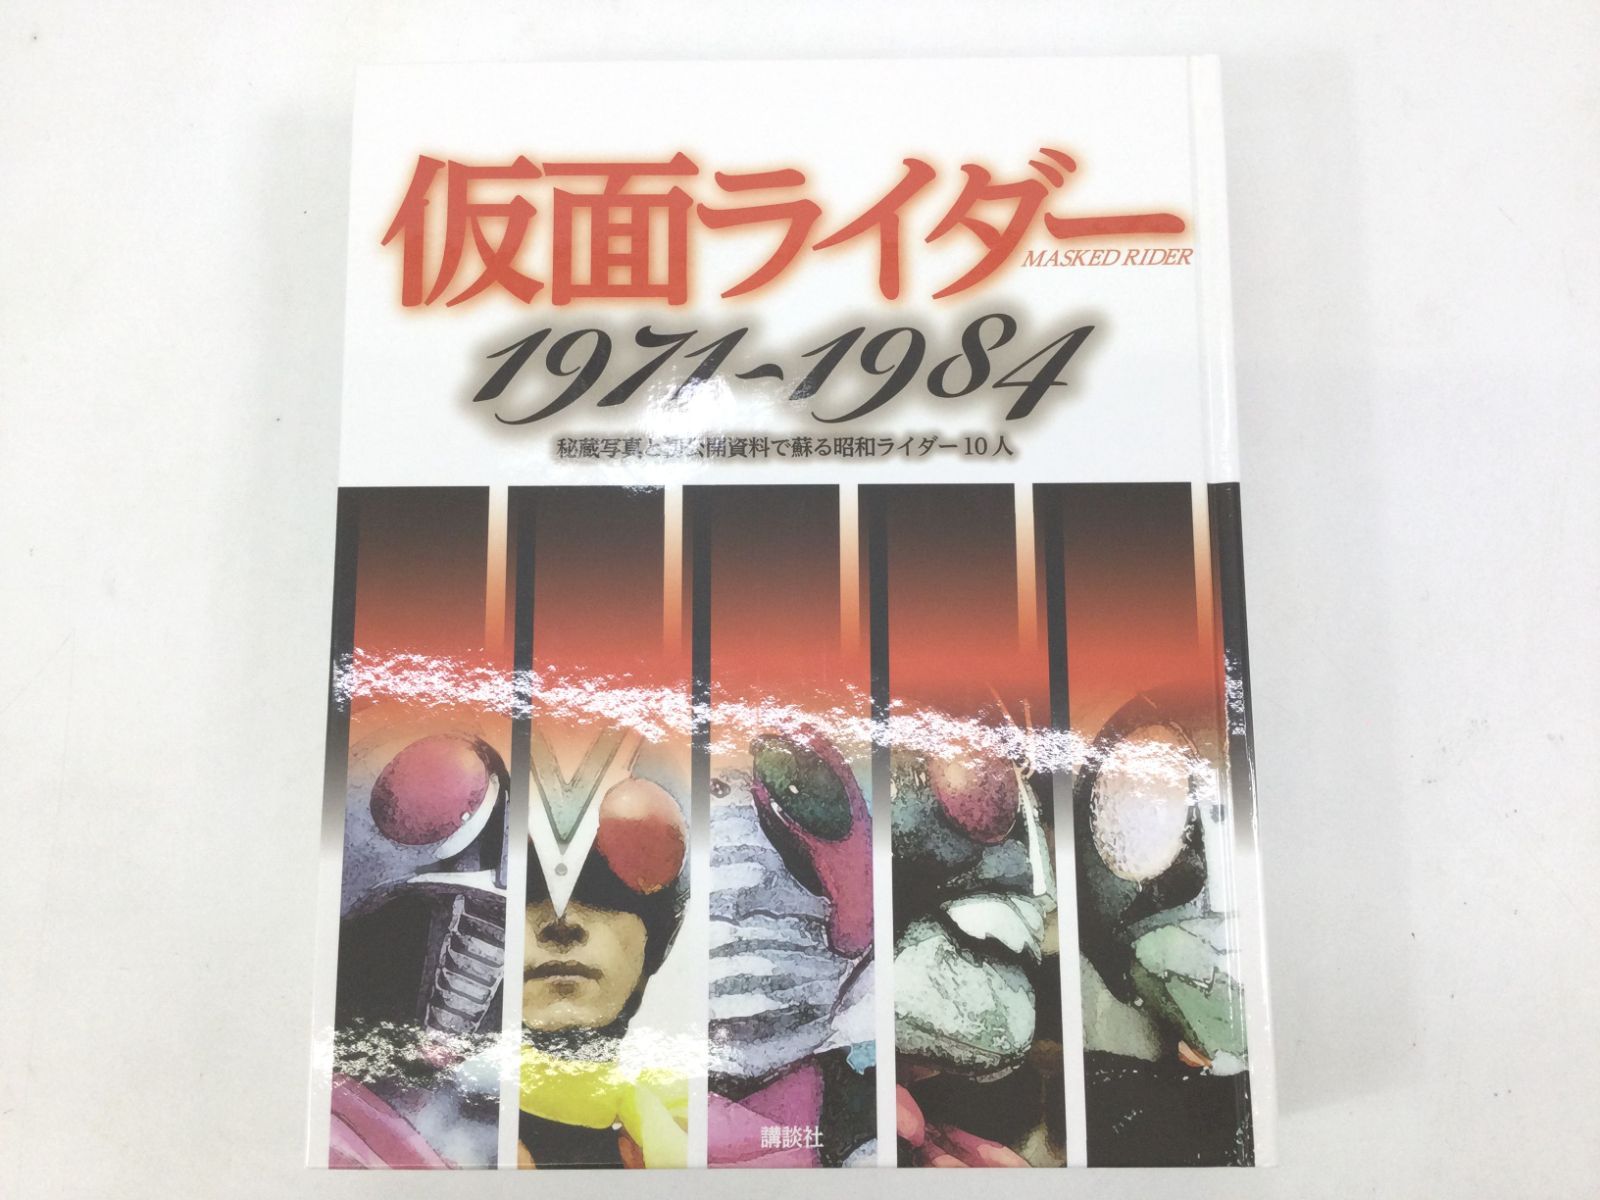 B0804]仮面ライダー1971~1984 秘蔵写真と初公開資料 初版 - D.R.shop